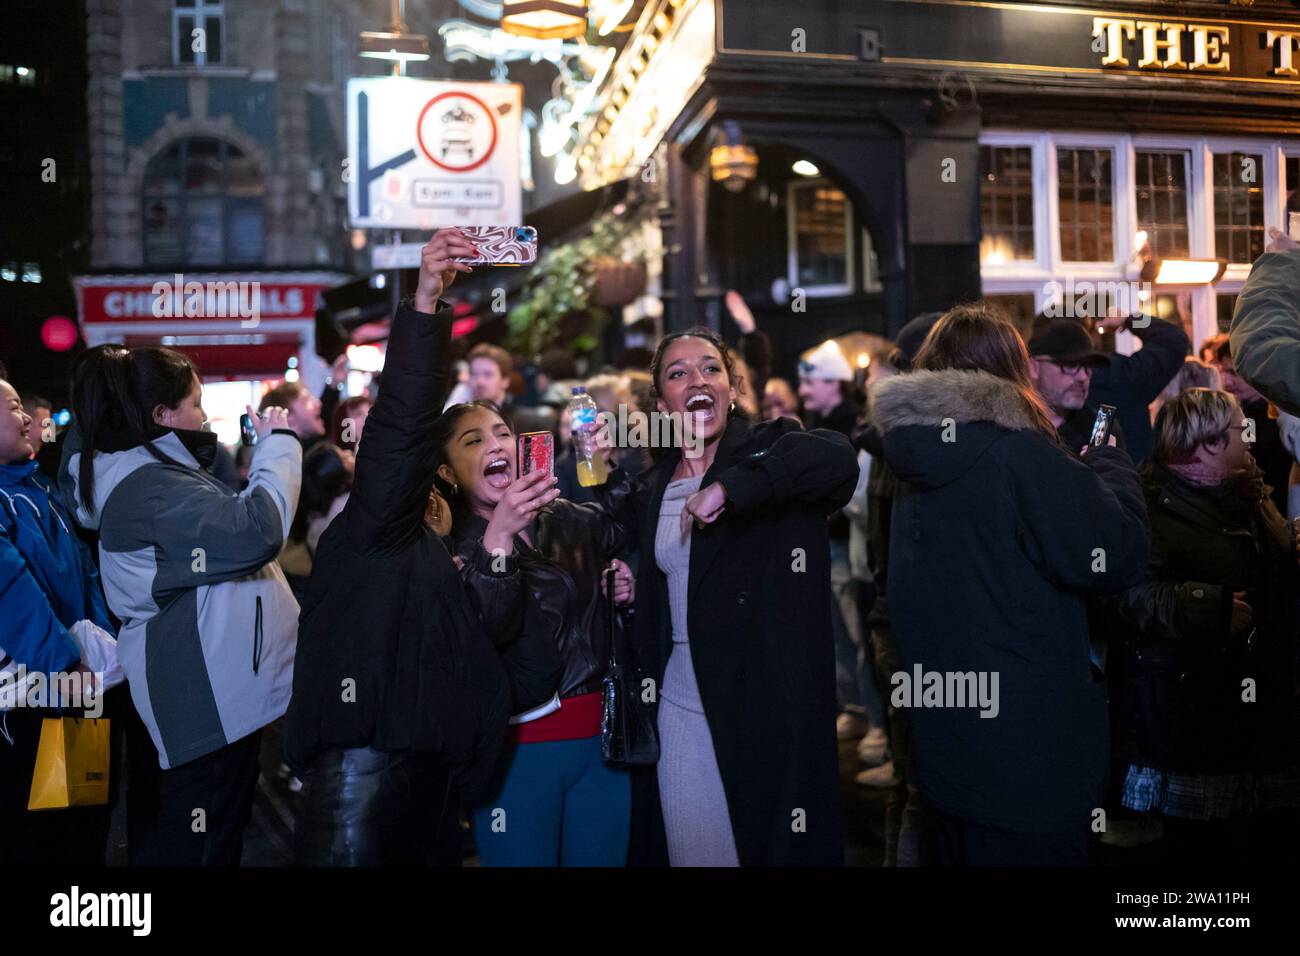 Célébrations de la Saint-Sylvestre à Londres 2023/24 personnes sur Old Compton Street avant les célébrations de la Saint-Sylvestre dans le West End de Londres. 31 décembre 2023, Londres, Angleterre, Royaume-Uni crédit : Jeff Gilbert/Alamy Live News Banque D'Images